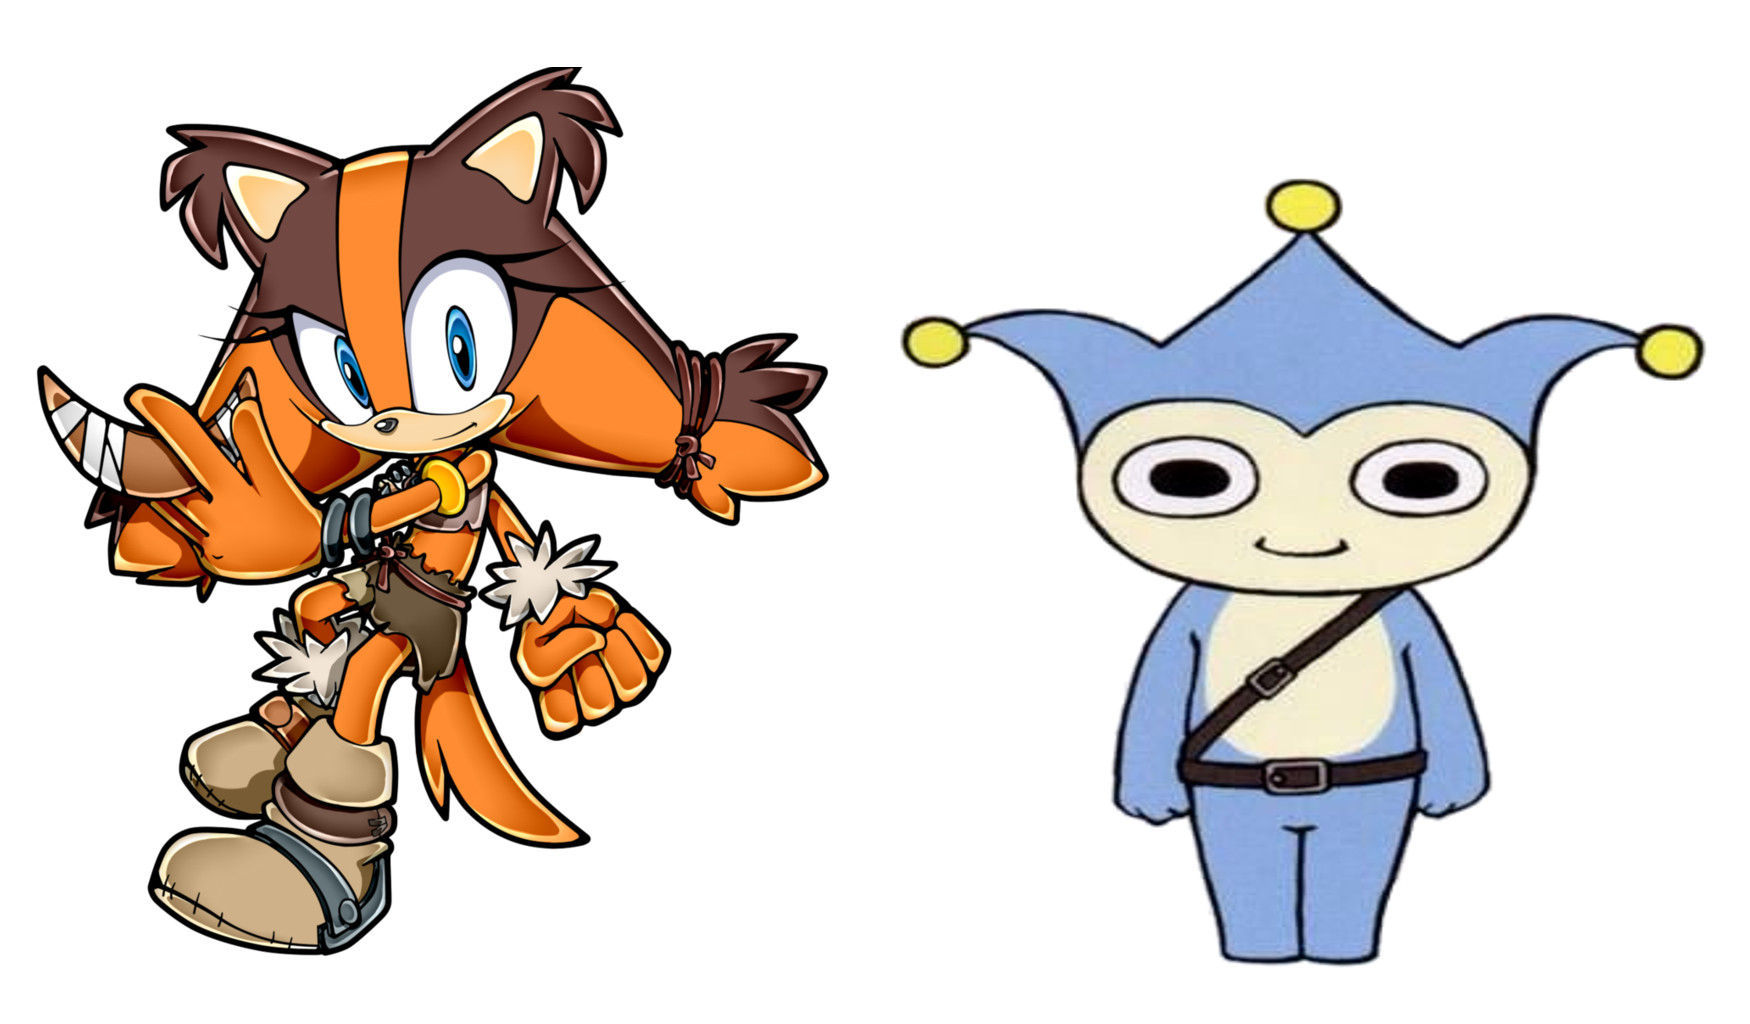 ¿Qué tienen en común estos dos personajes?